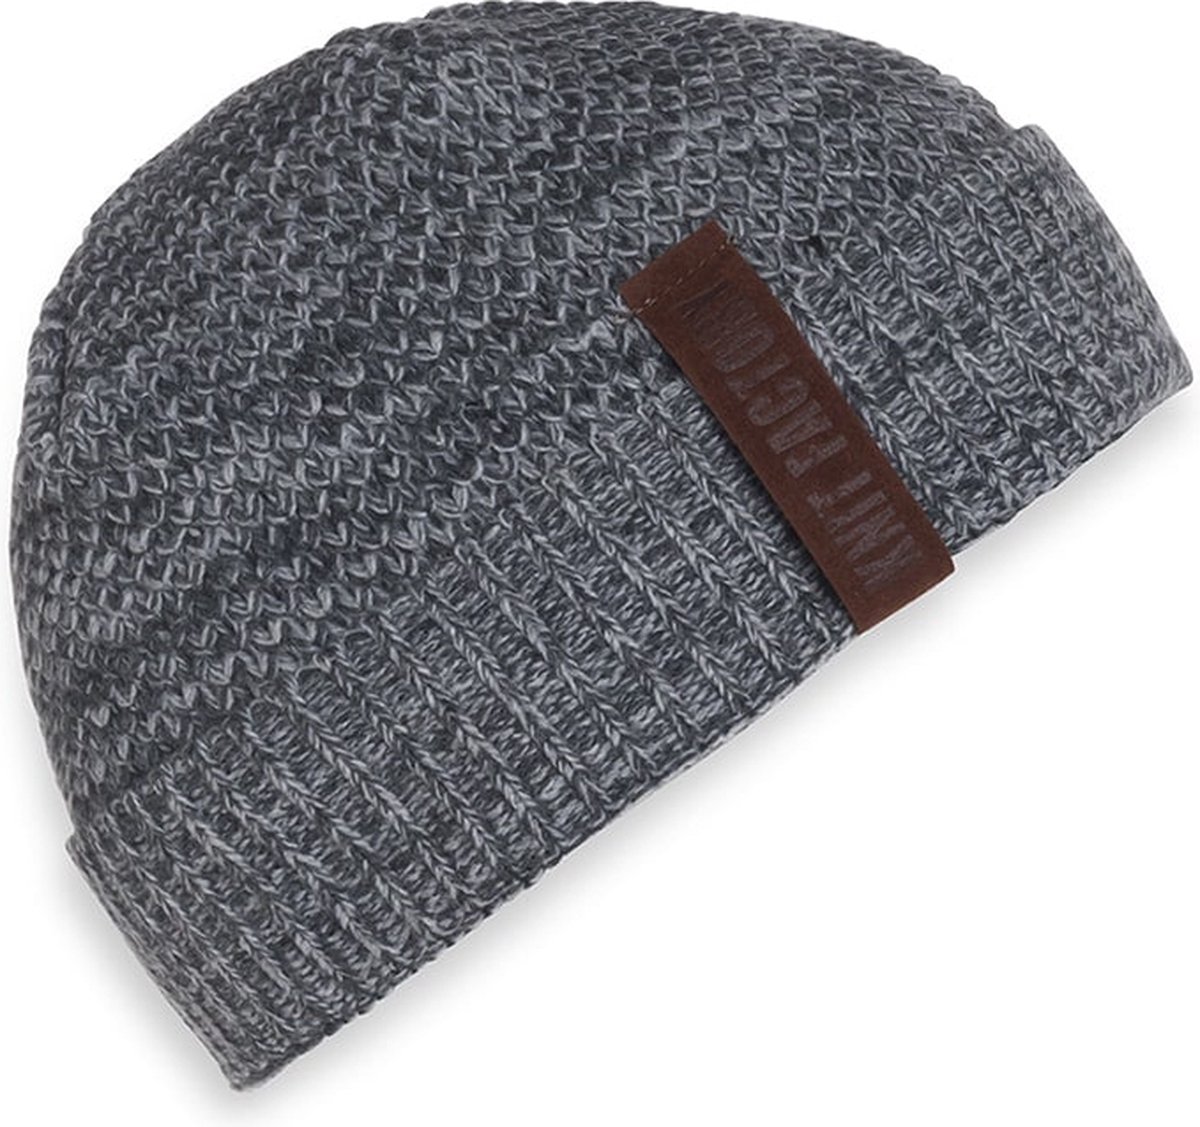 Knit Factory Jazz Gebreide Muts Heren & Dames - Beanie hat - Antraciet/Licht Grijs - Warme grijs gemêleerde Wintermuts - Unisex - One Size